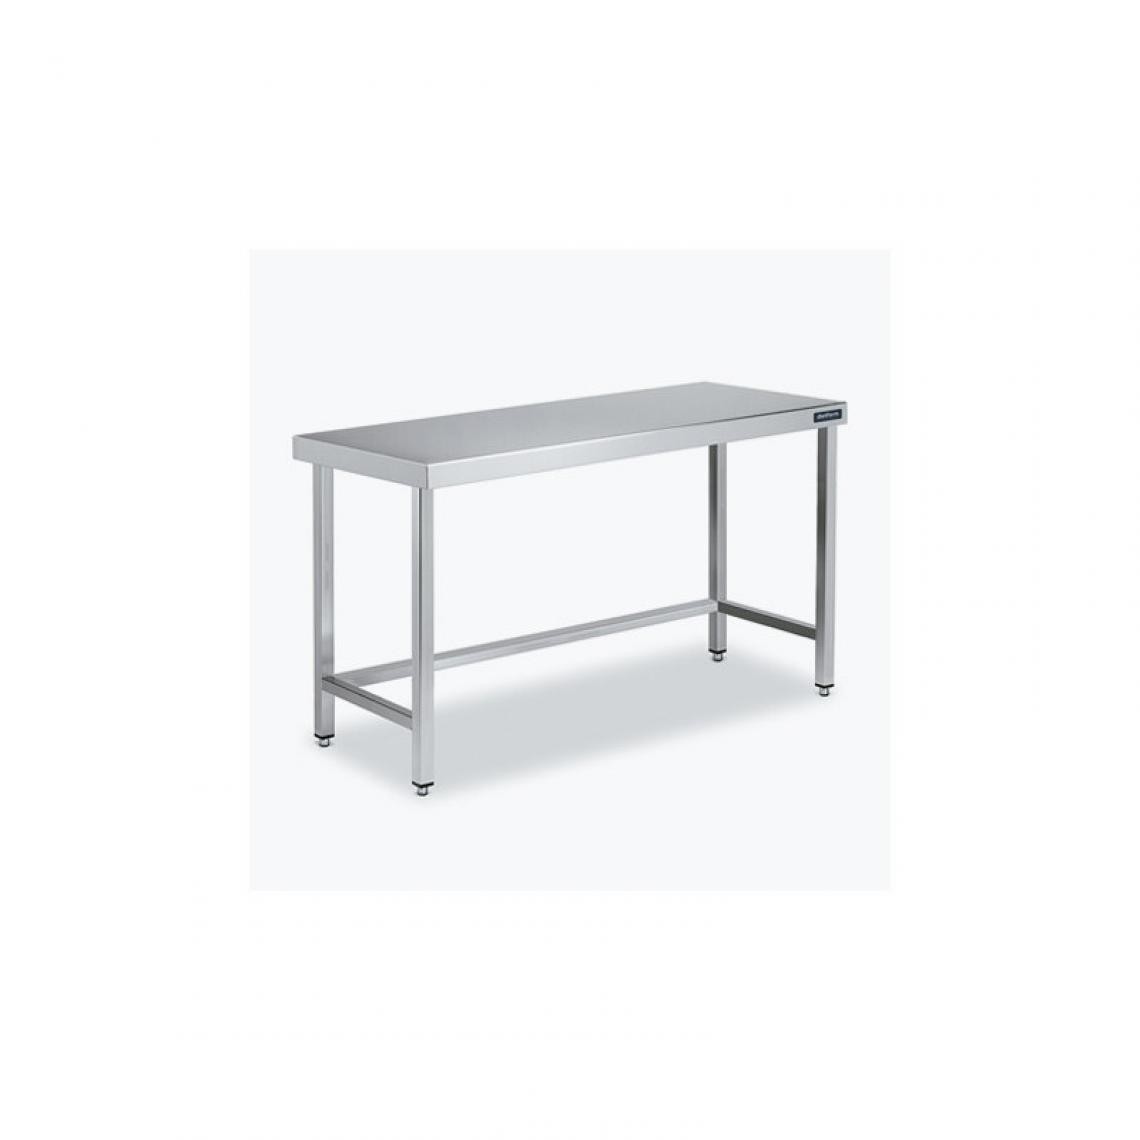 DISTFORM - Table Centrale 600x900 avec Renforts - Distform - Inox 18/101900x900x850mm - Tables à manger